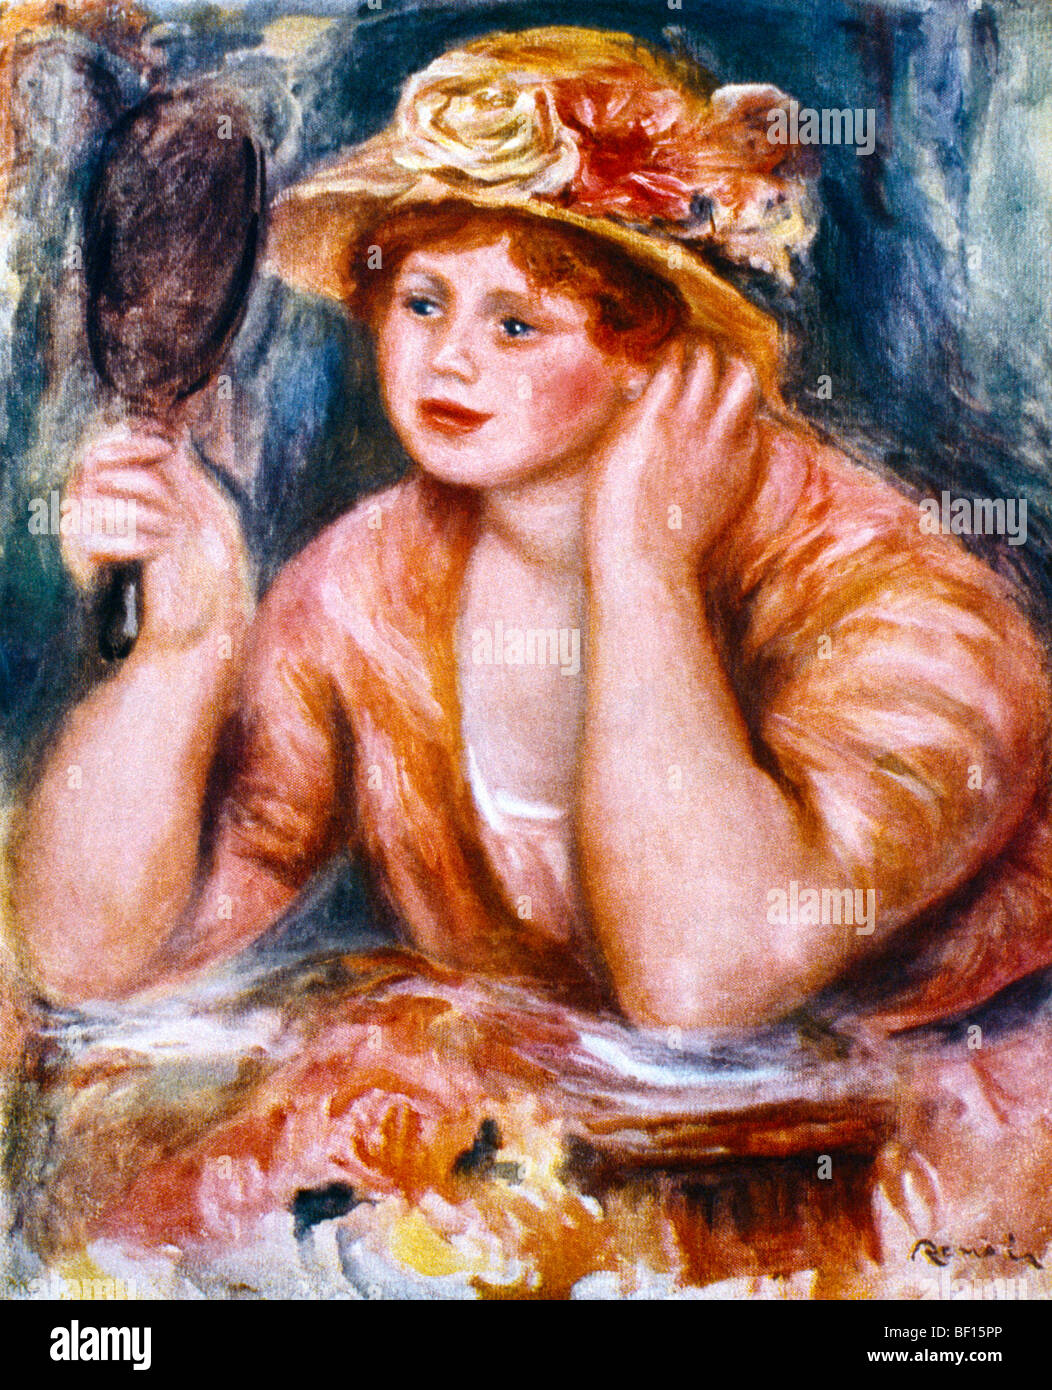 Le Femme Au Miroir Painting By Renoir 1916 Stock Photo